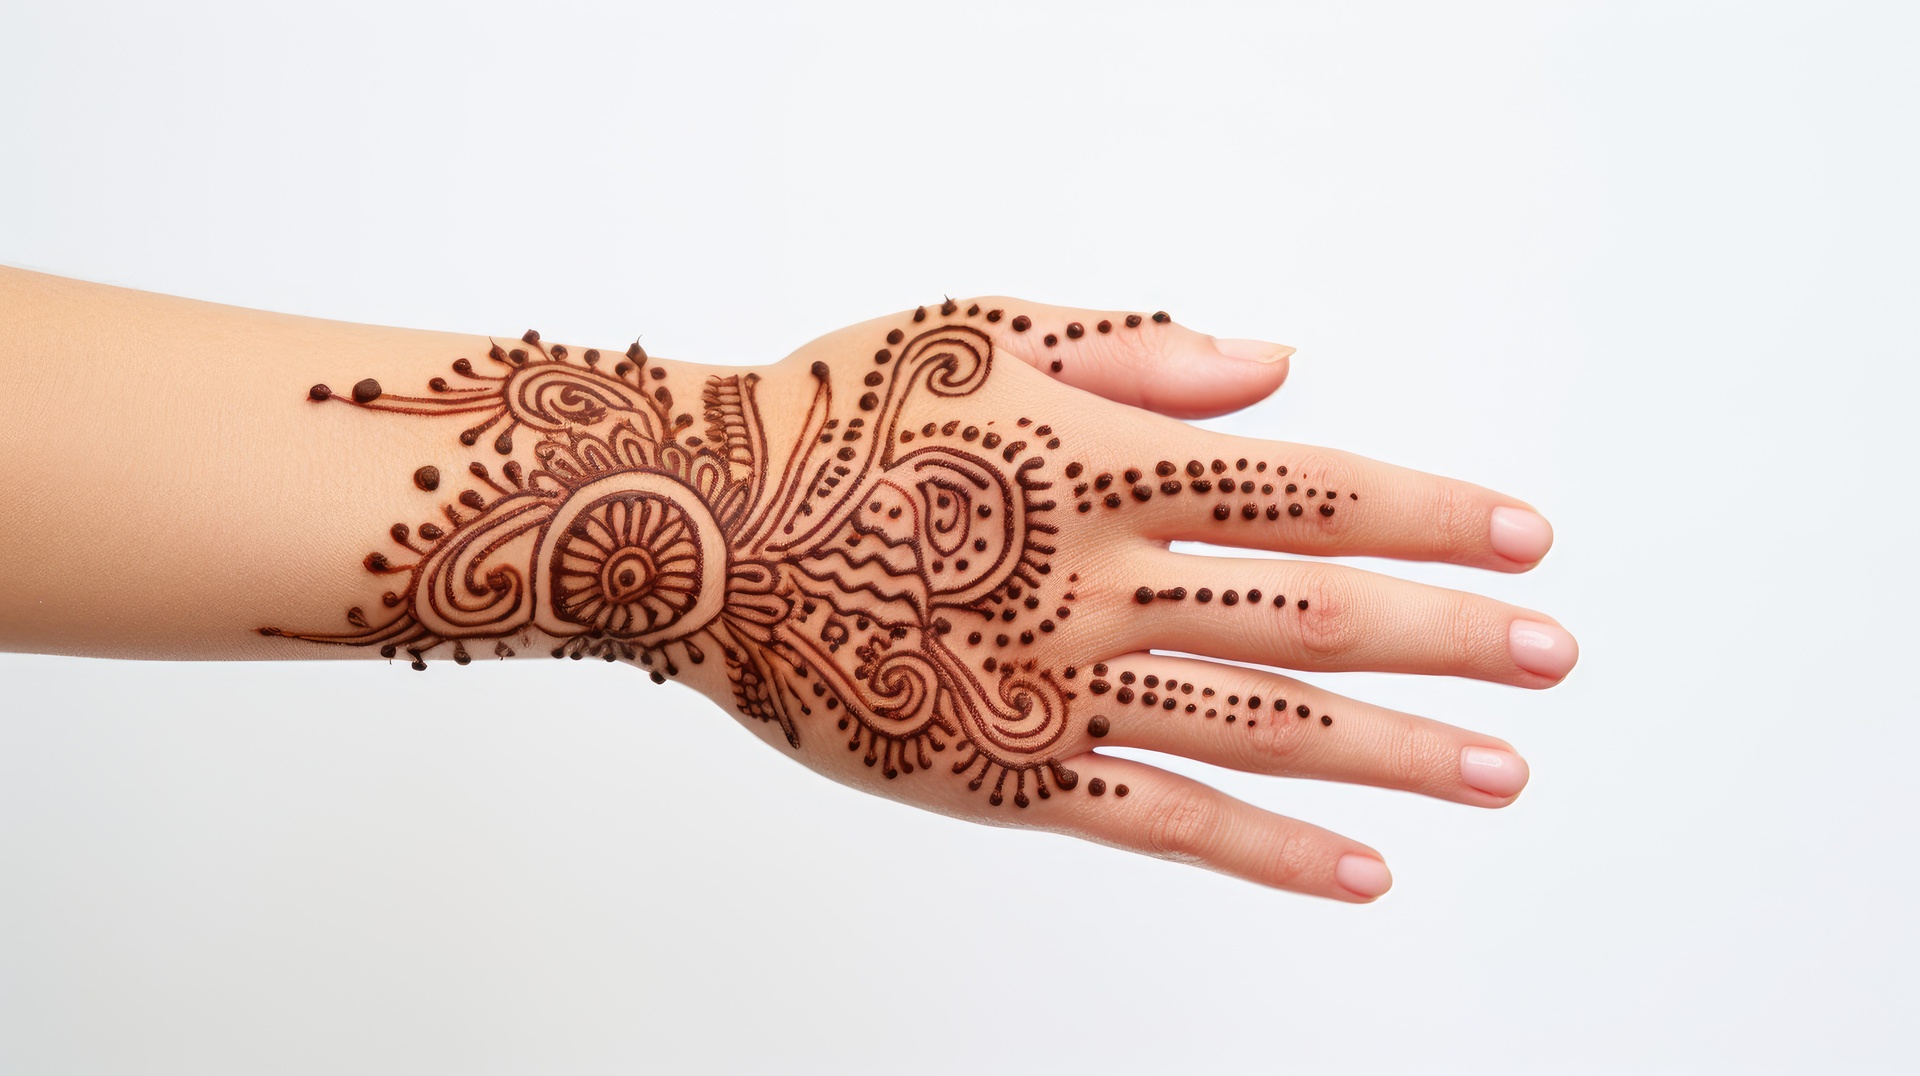 Obrazek przedstawia ręce udekorowane pięknymi tatuażami z henny. Te delikatne wzory na skórze tworzą unikalną i zjawiskową kompozycję. Obecność tatuaży z henny na rękach podkreśla artystyczną ekspresję i indywidualność noszącej je osoby